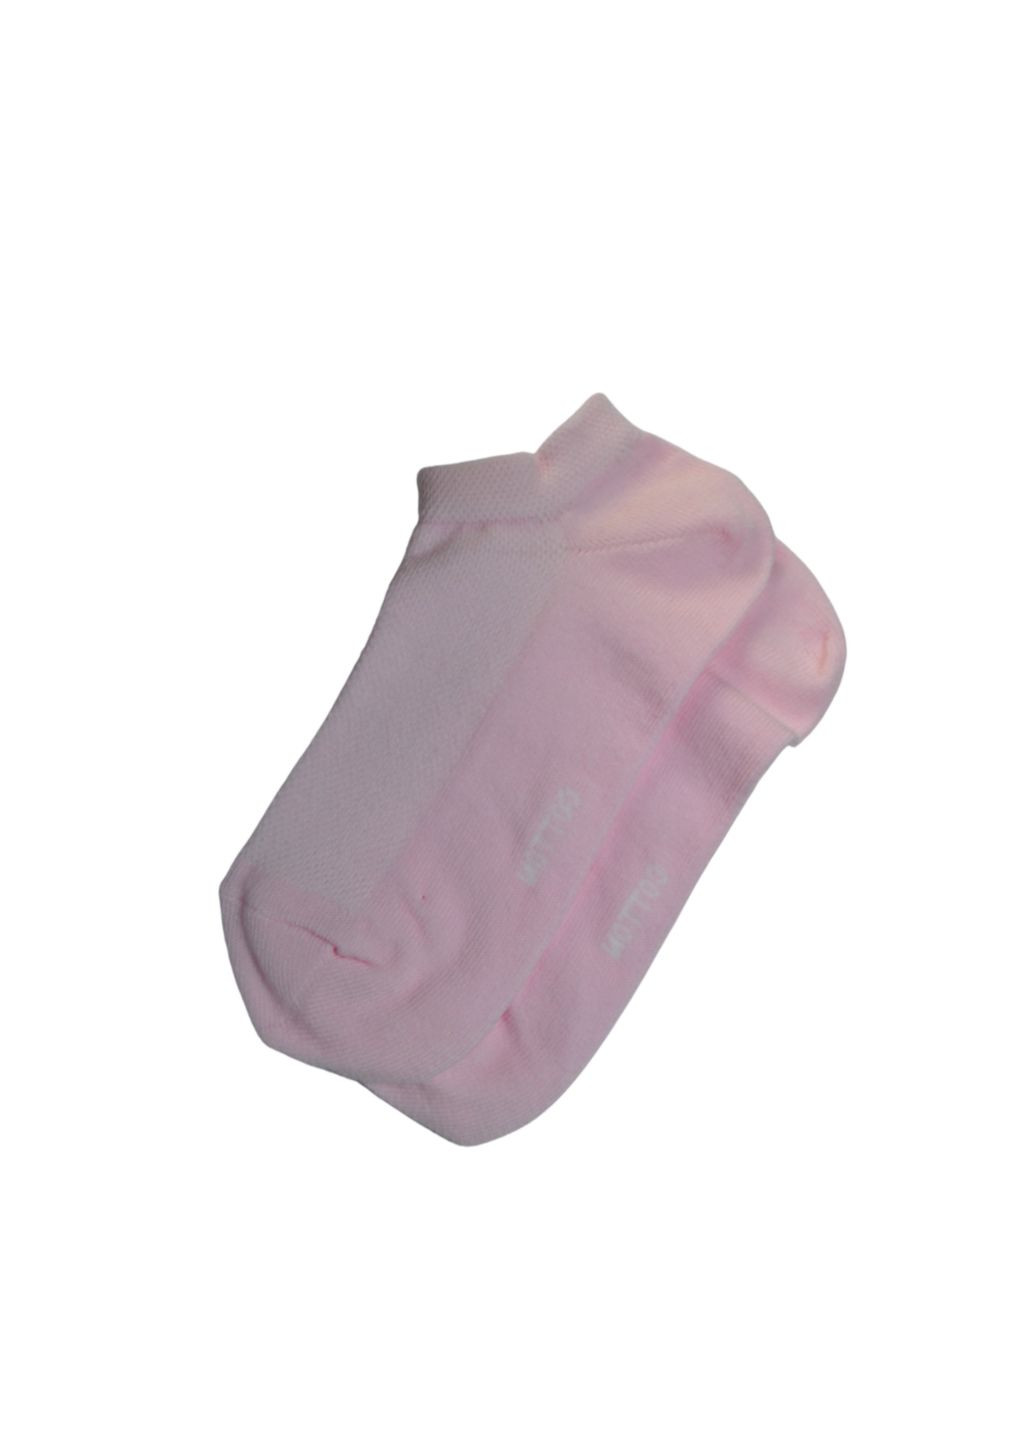 Шкарпетки жіночі короткі сітка RT1112-044 Siela rt1112-044-шт (260063068)